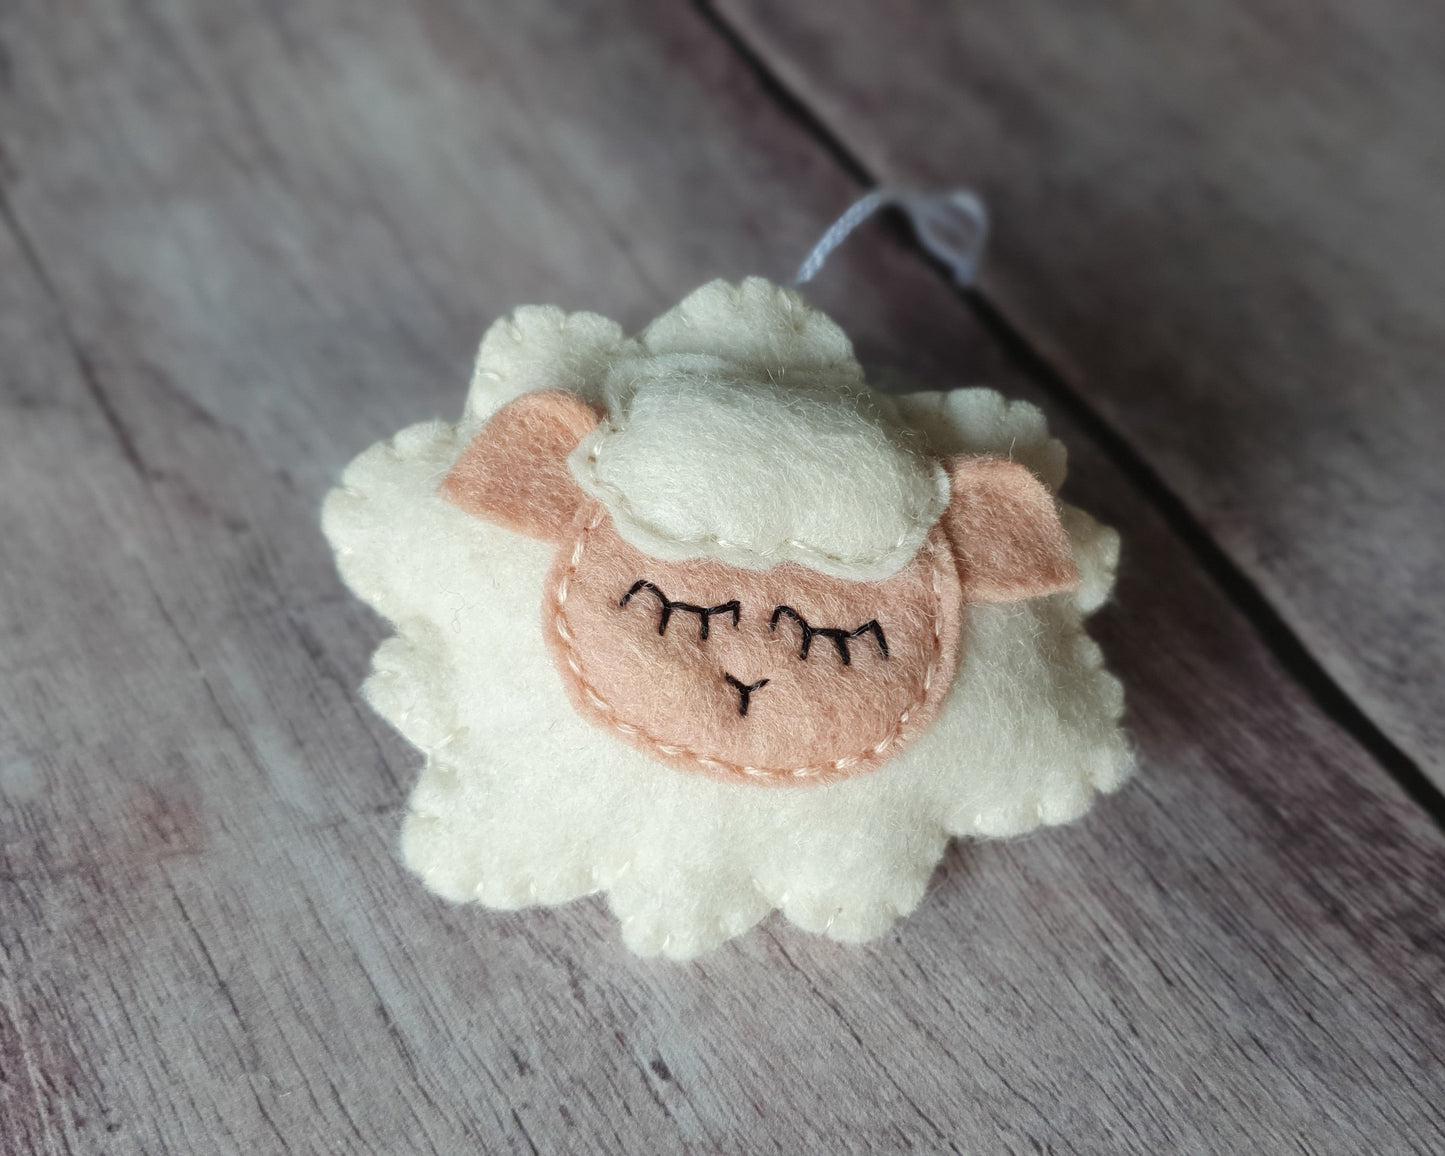 Sleepy Sheep ornament - felt lamb Christmas decor